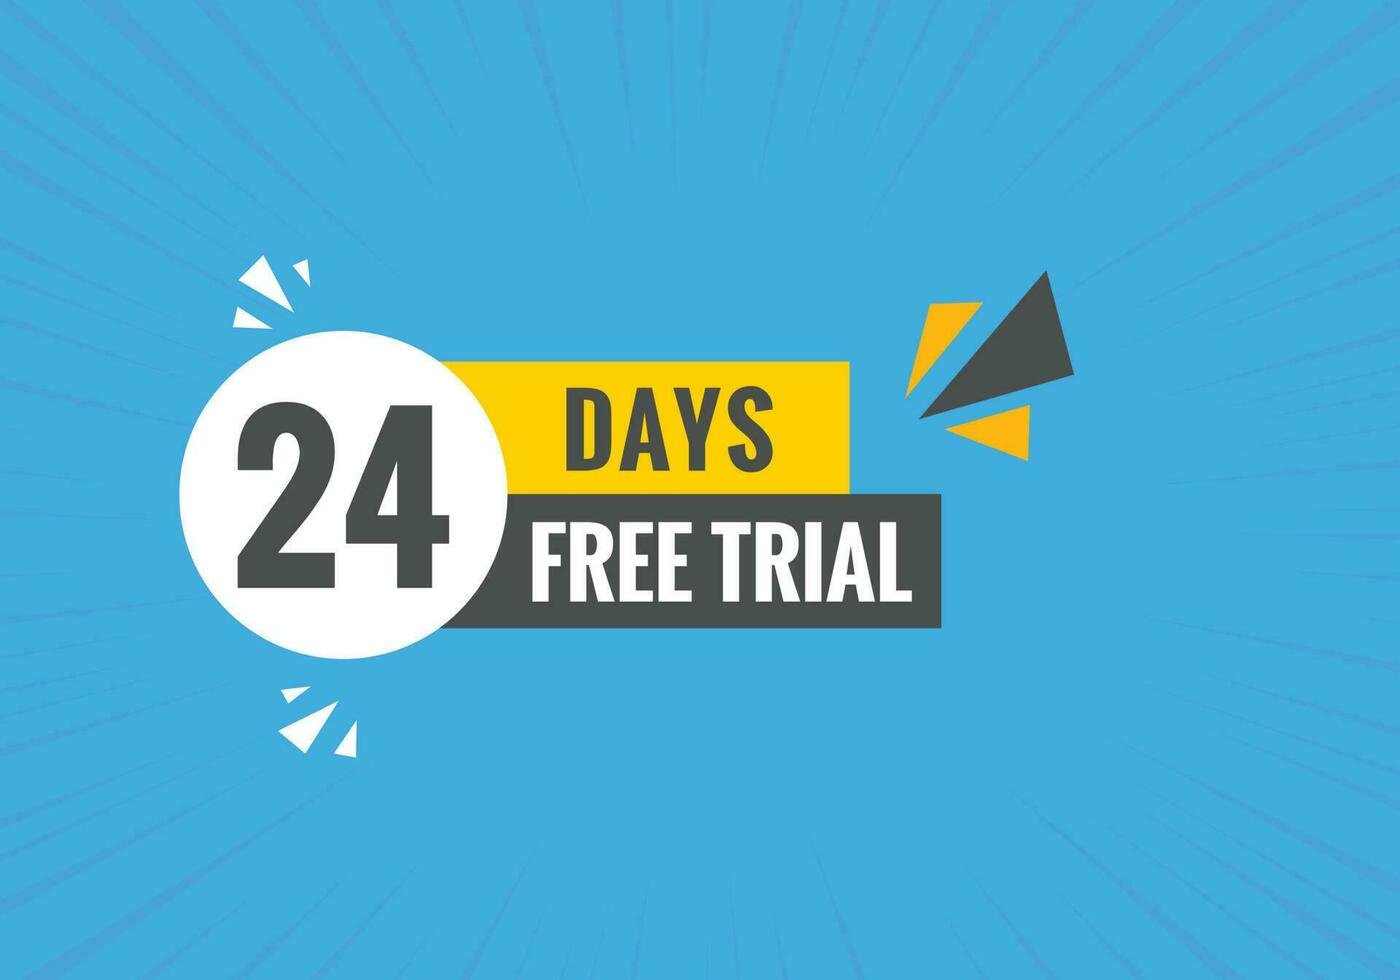 24 journées gratuit procès bannière conception. 24 journée gratuit bannière Contexte vecteur